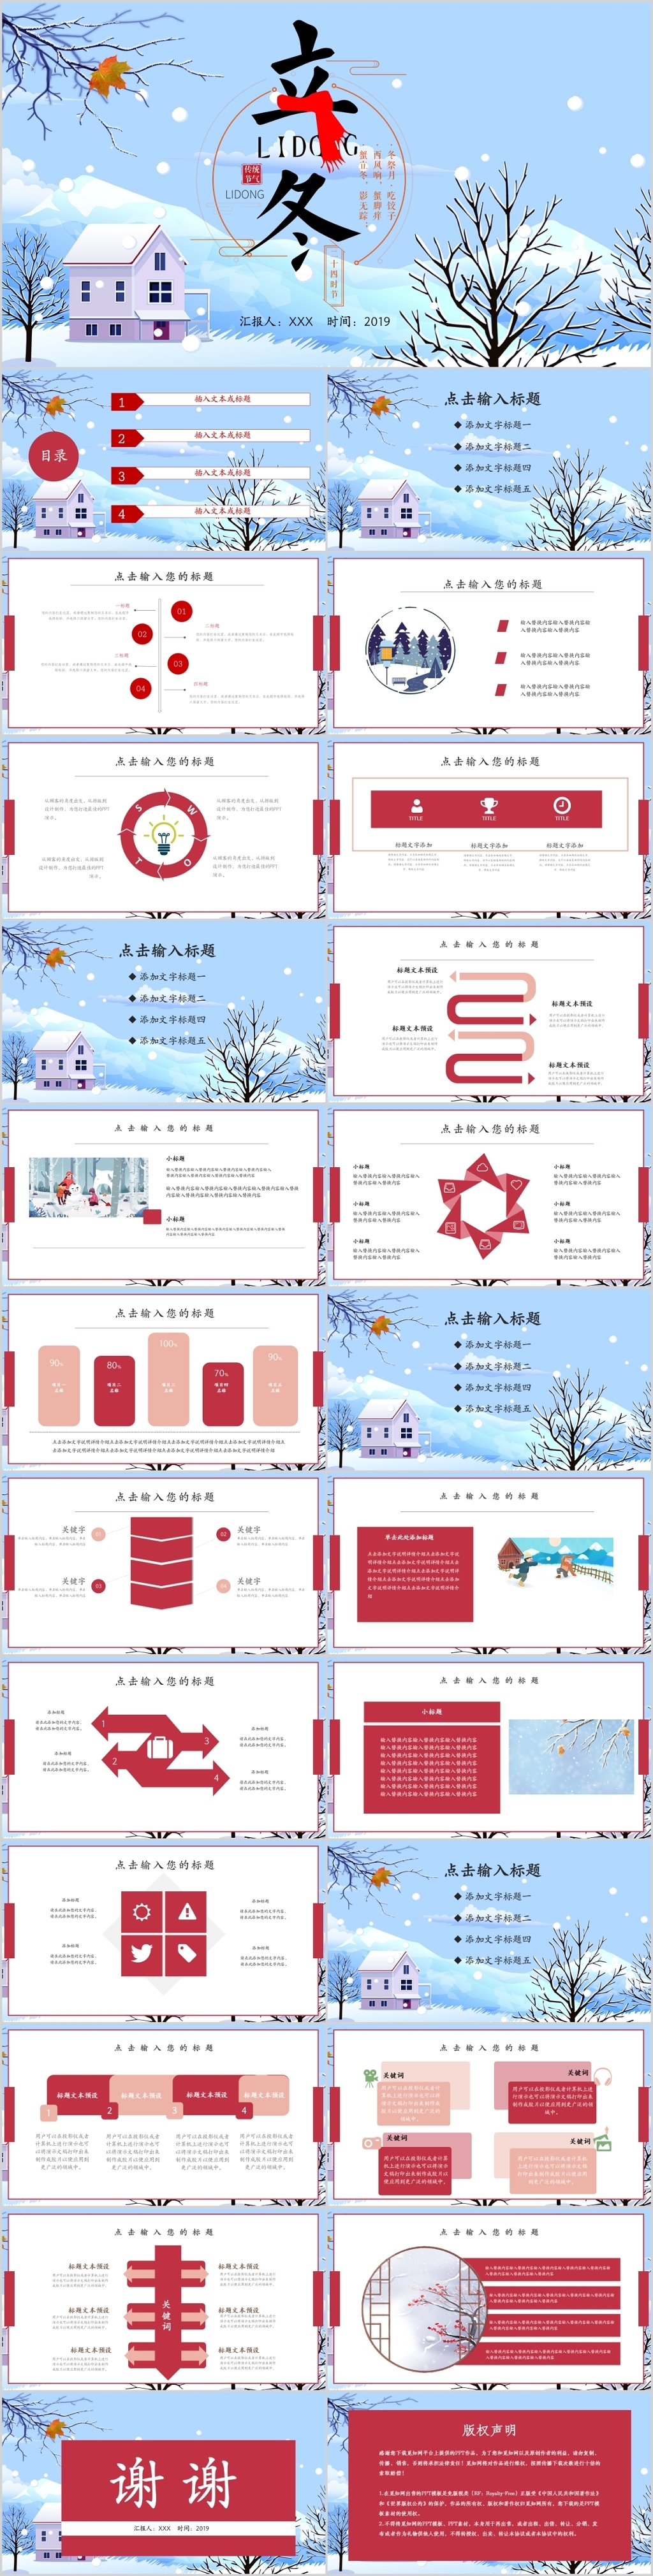 立冬红蓝色下雪文化节日习俗介绍ppt模板